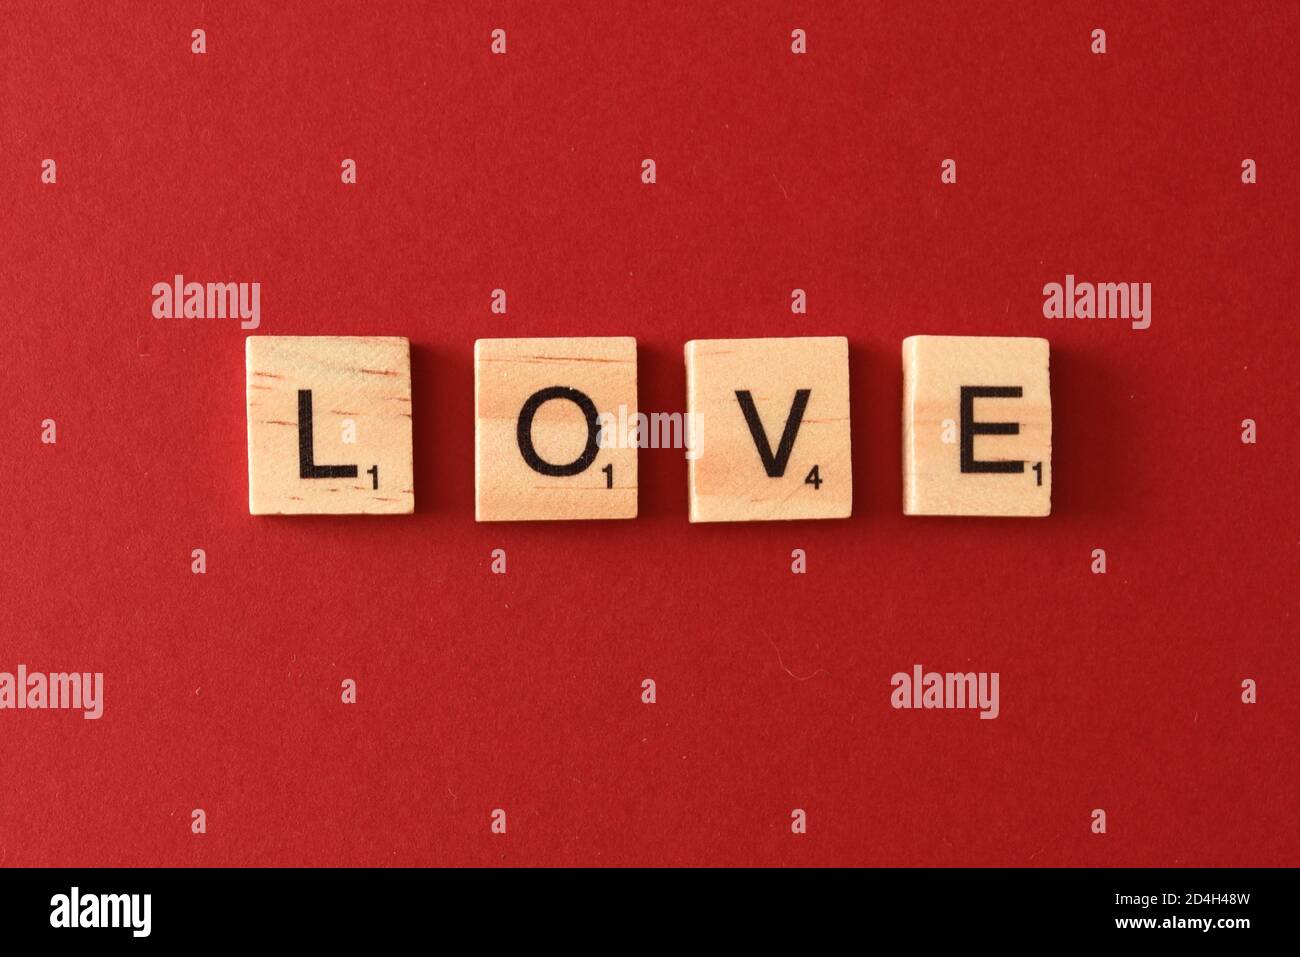 El amor espelta usando azulejos de estilo scrabble Foto de stock